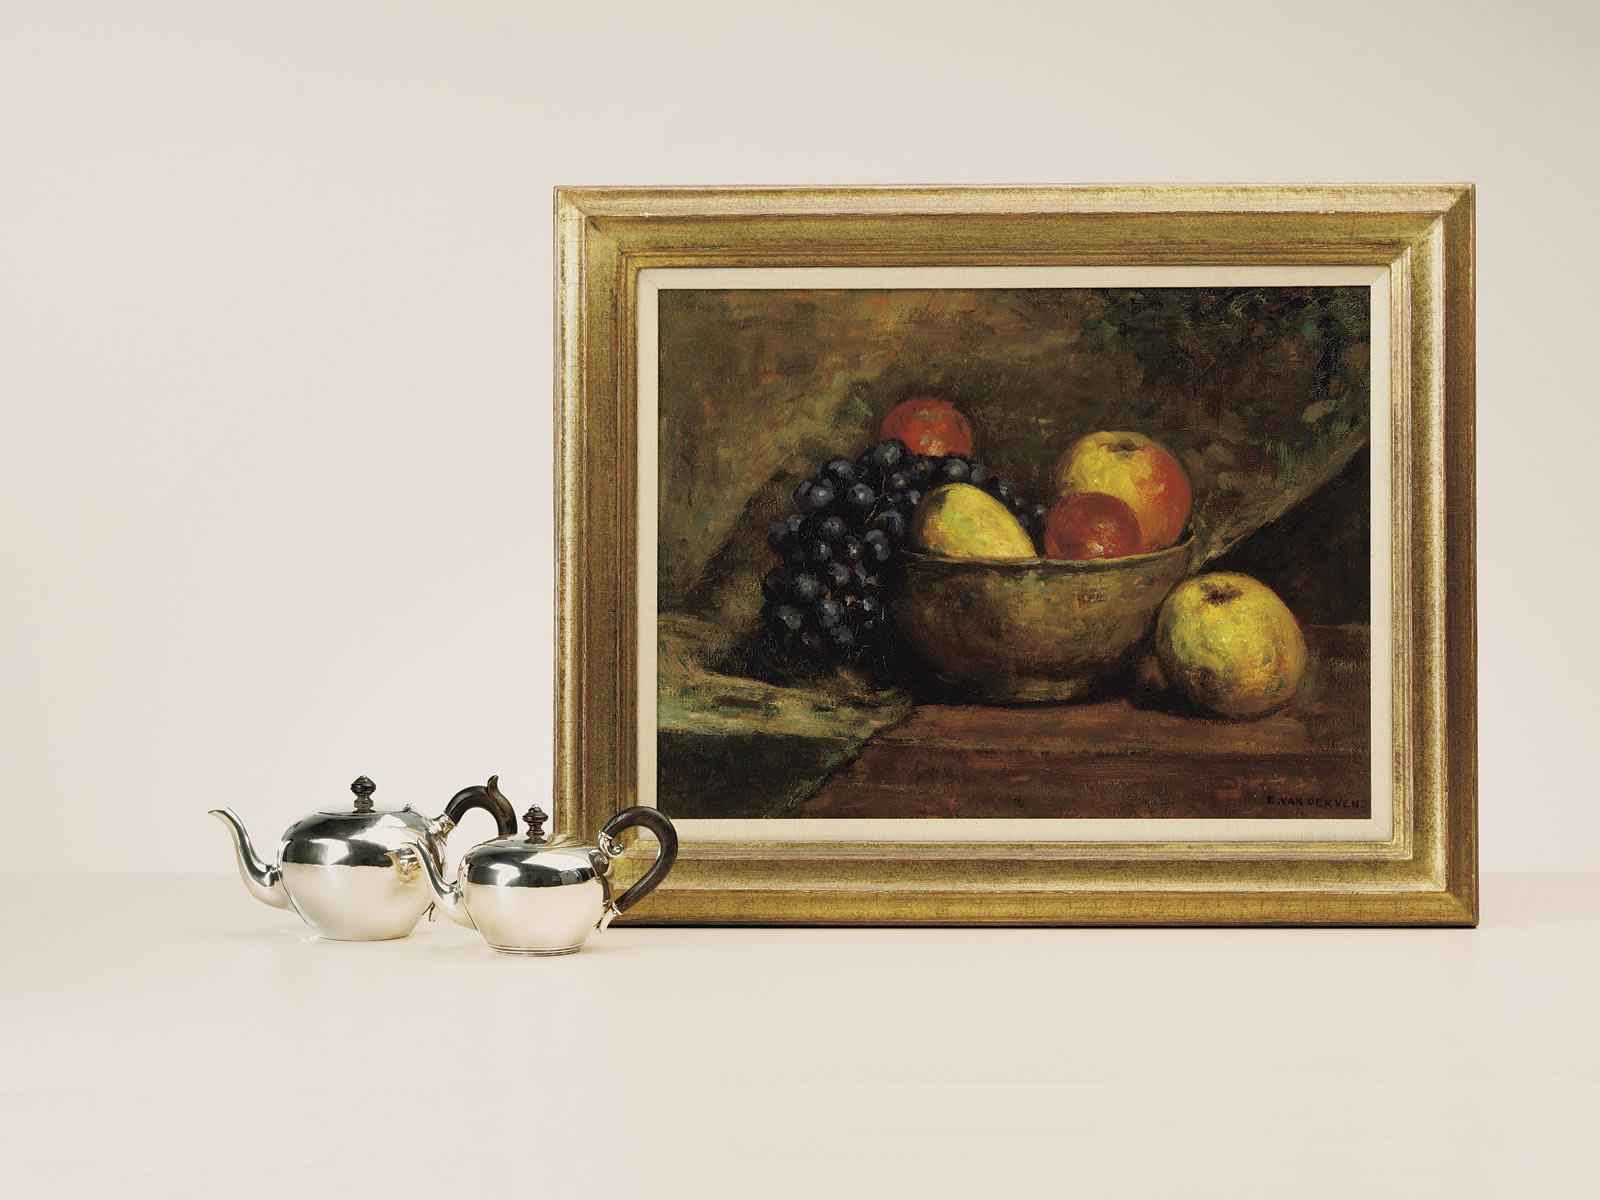 Emanuel van der Ven “Stilleven met fruit”; olieverf op doek